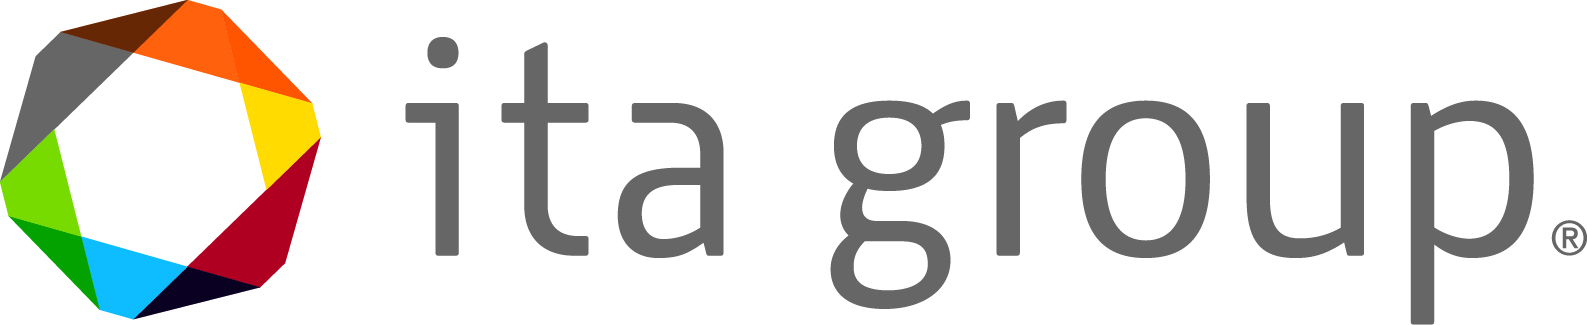 ITA Group Logo.jpg